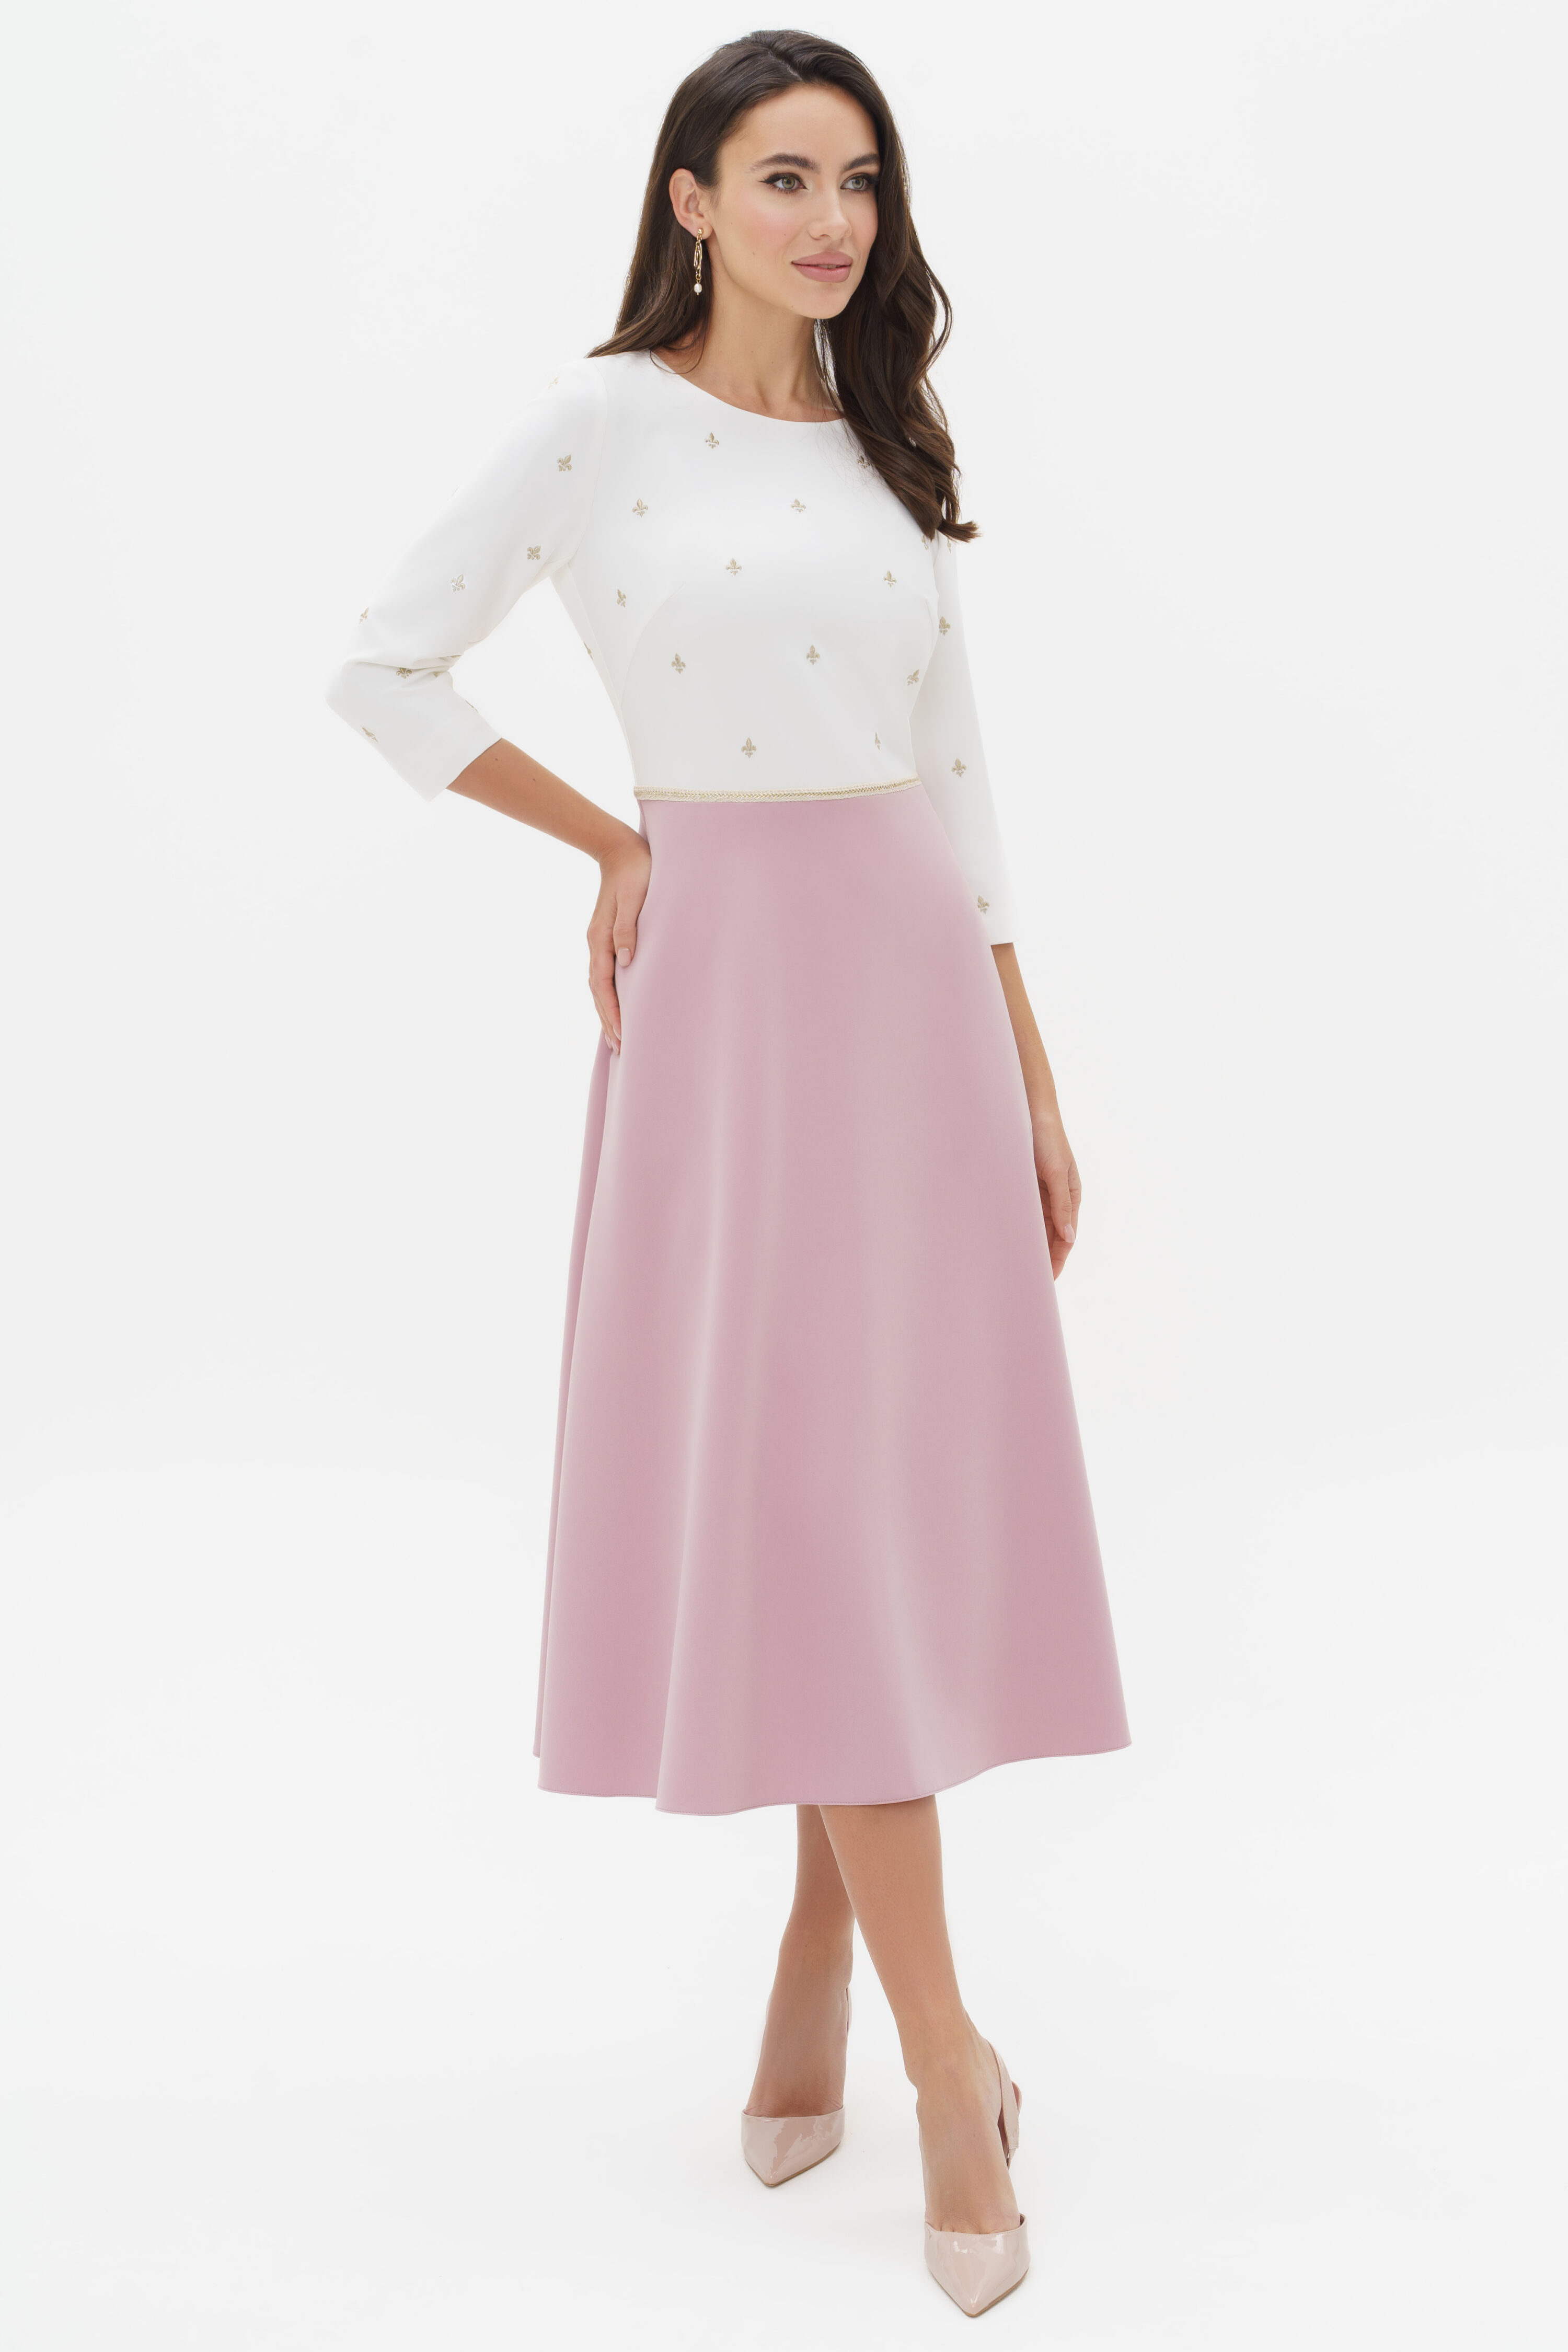 Купить платье URS 24-305-2 розовое с вышивкой нарядное